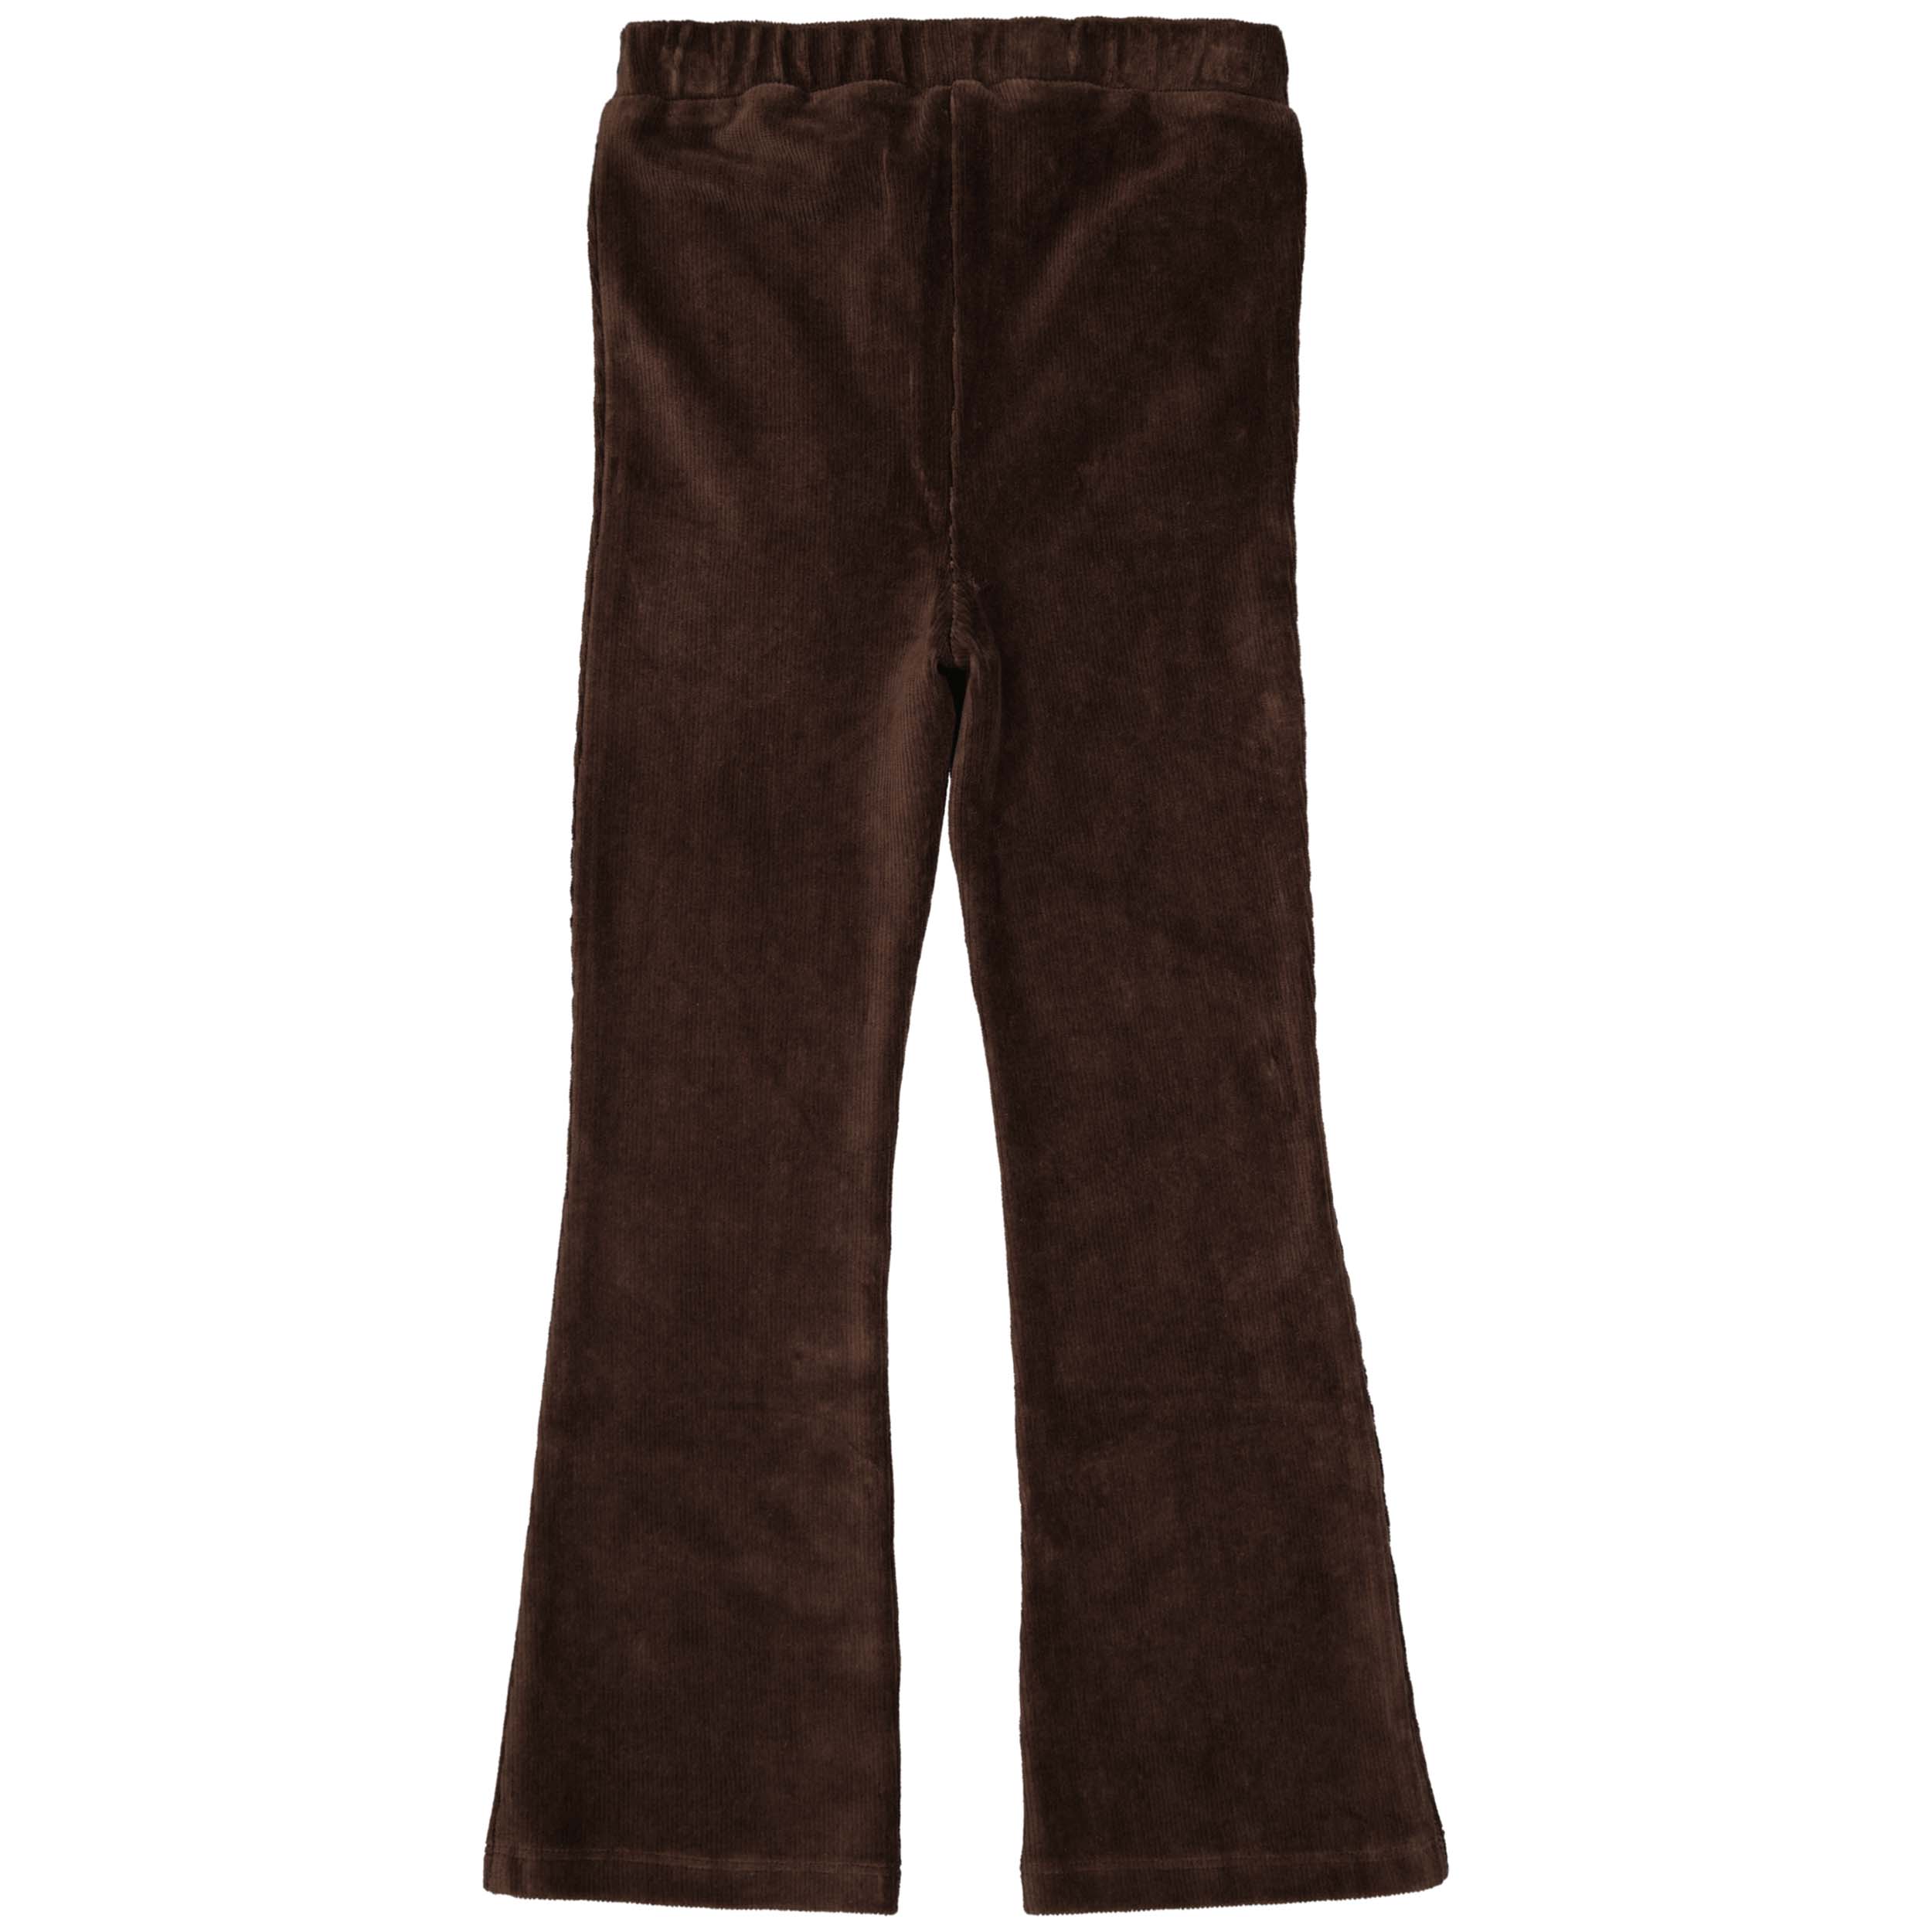 Meisjes Flairpants BILLYW222 van Little Levv in de kleur Brown Dark in maat 128.